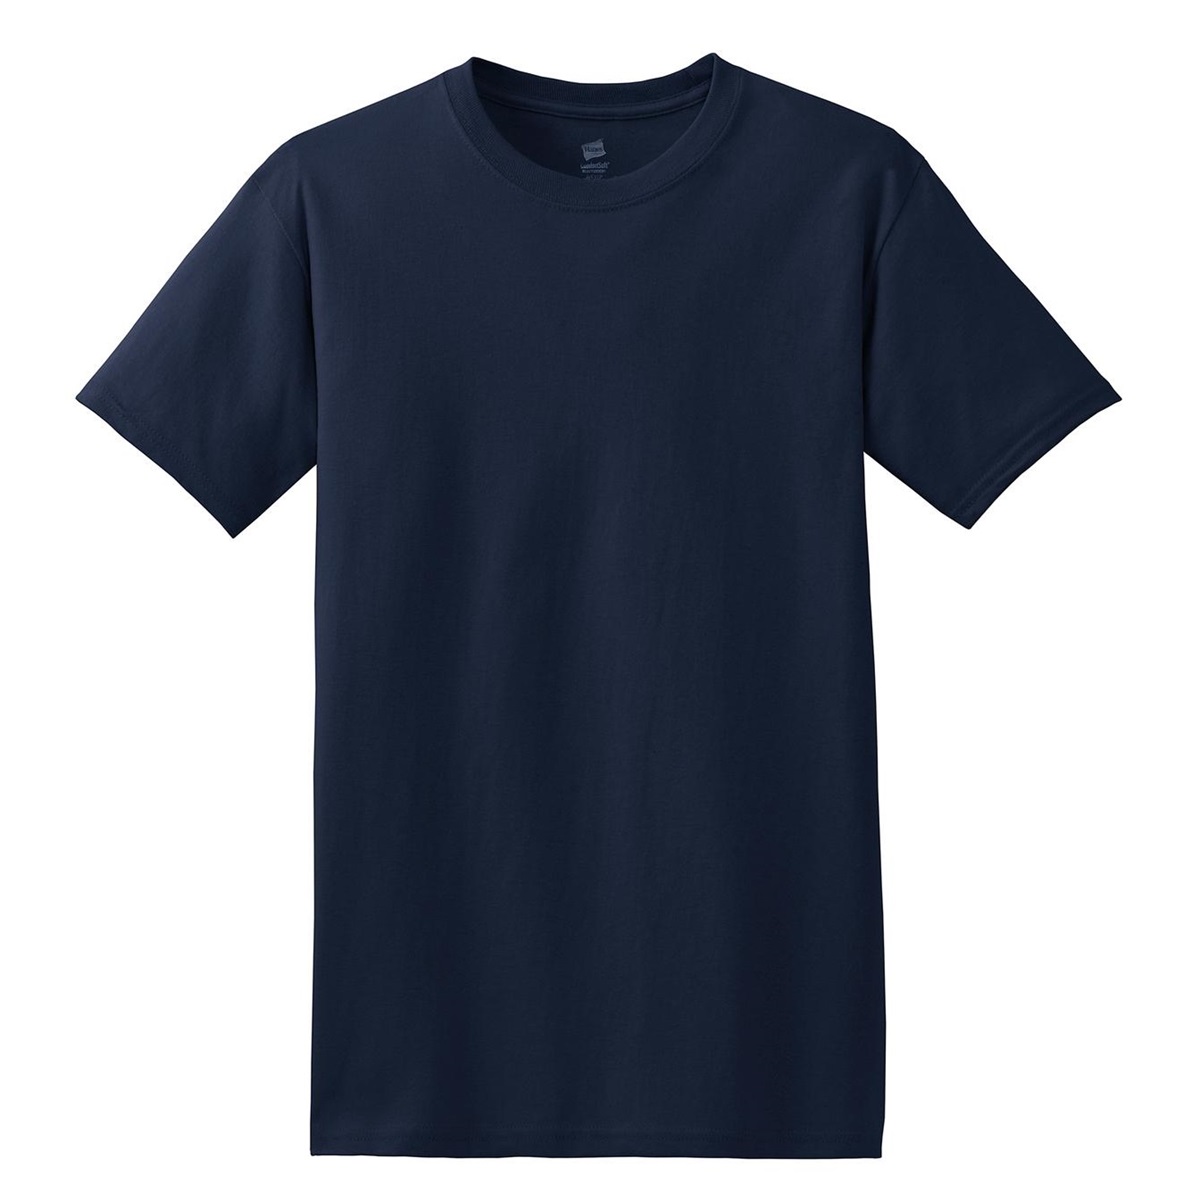 Hanes 5280 ComfortSoft Heavyweight Cotton T-Shirt - Navy | FullSource.com